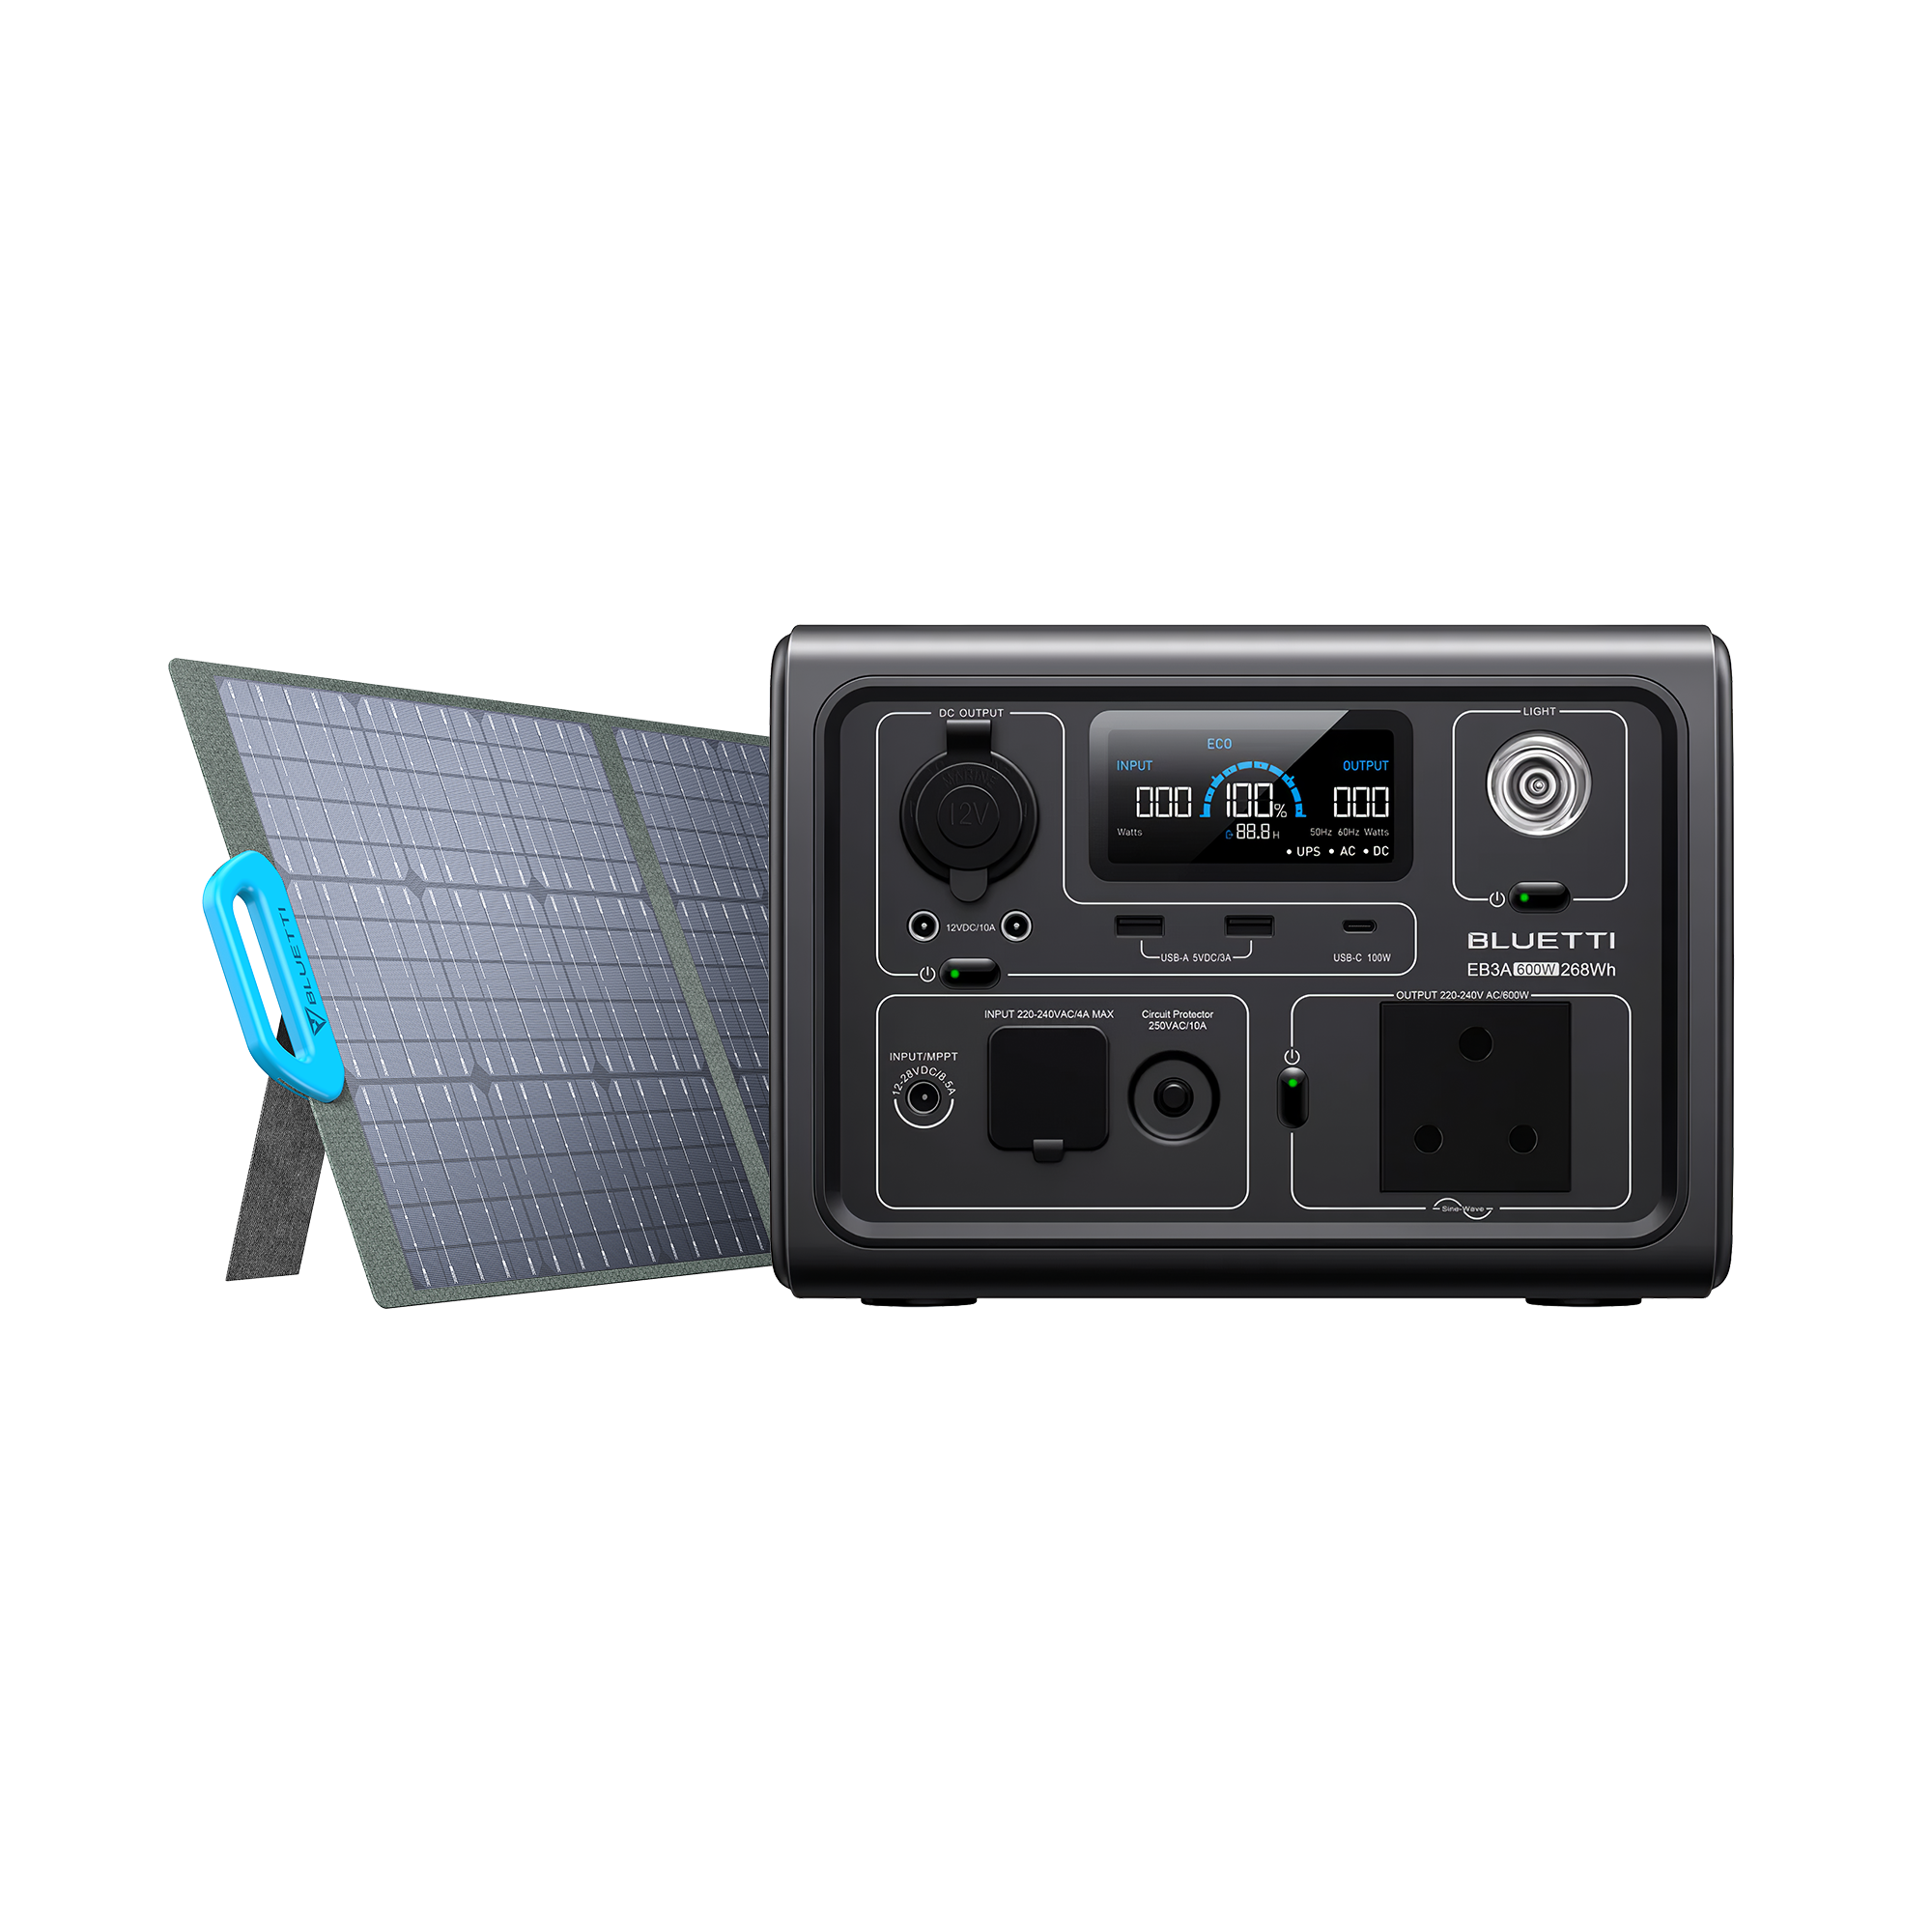 KIT Generatore solare portatile BLUETTI EB3A 600W + Pannello solare BLUETTI  PV200 pieghevole